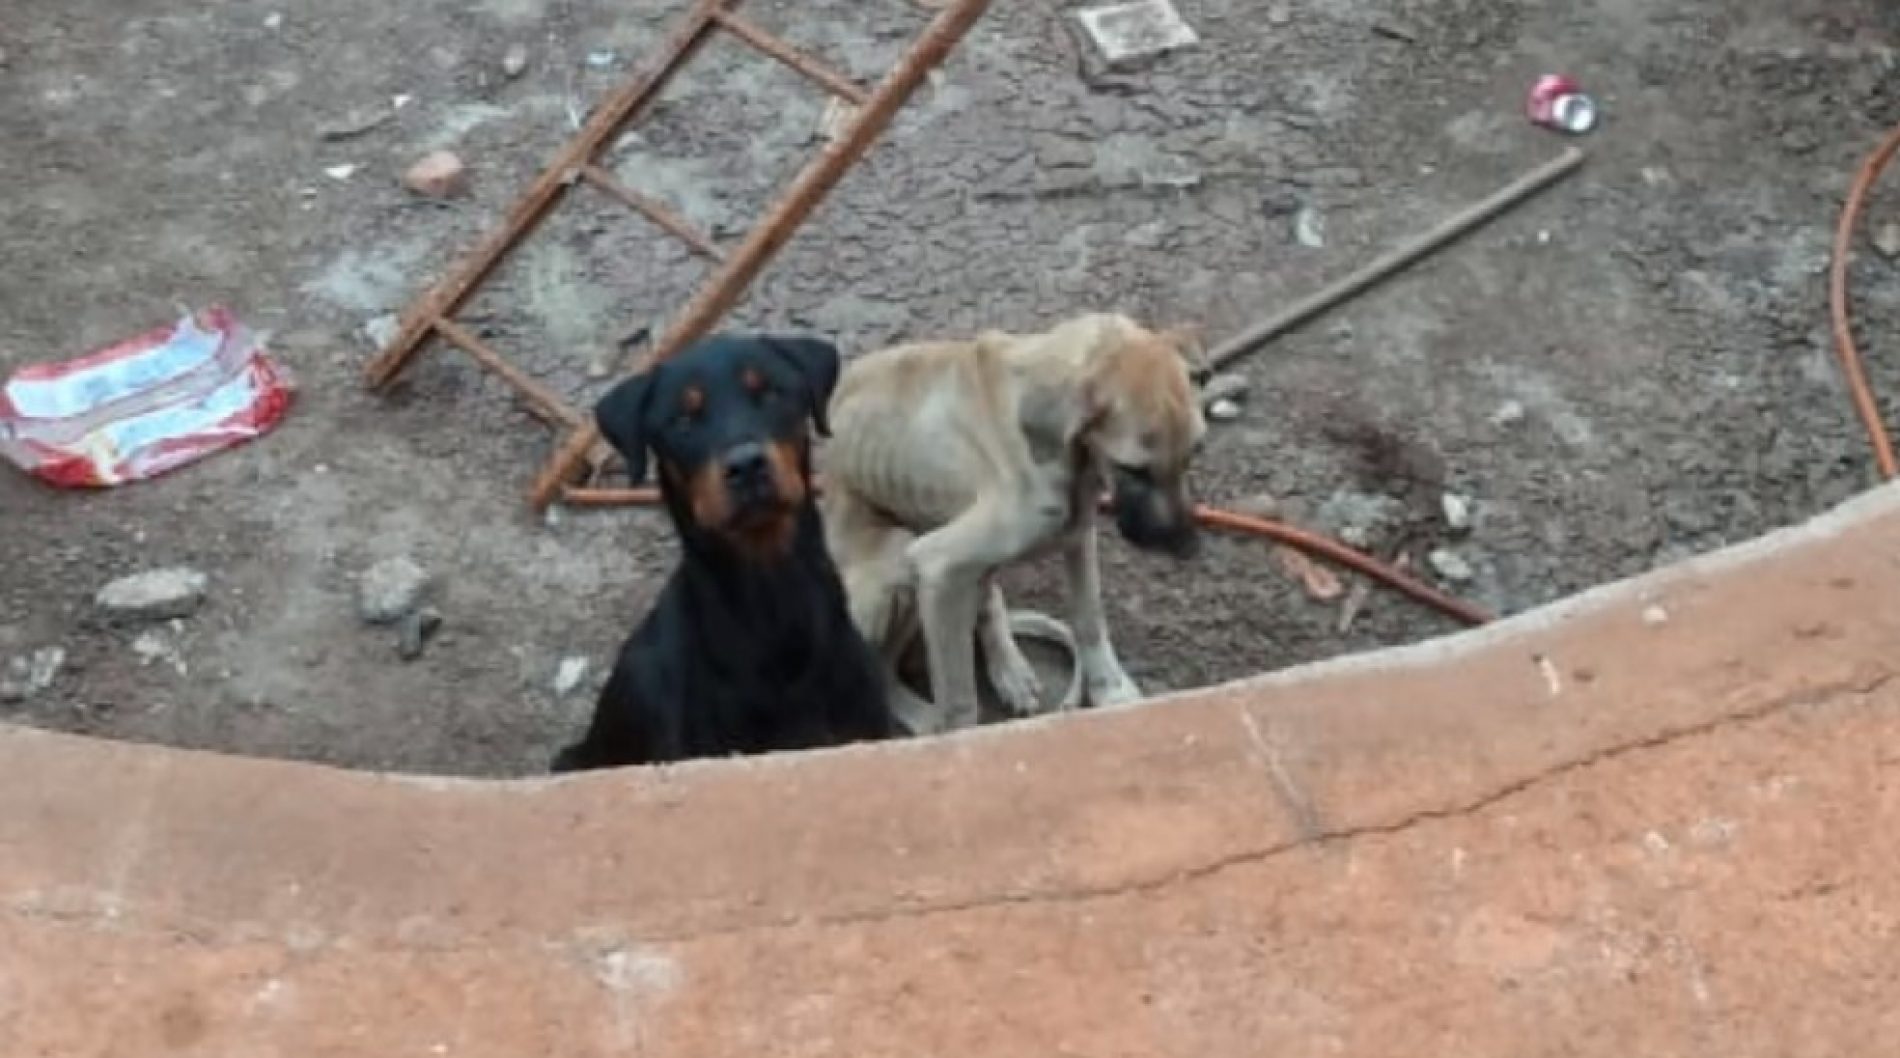 REGIÃO: “Estavam muito fracos”, diz presidente de ONG que resgatou cães sem comida